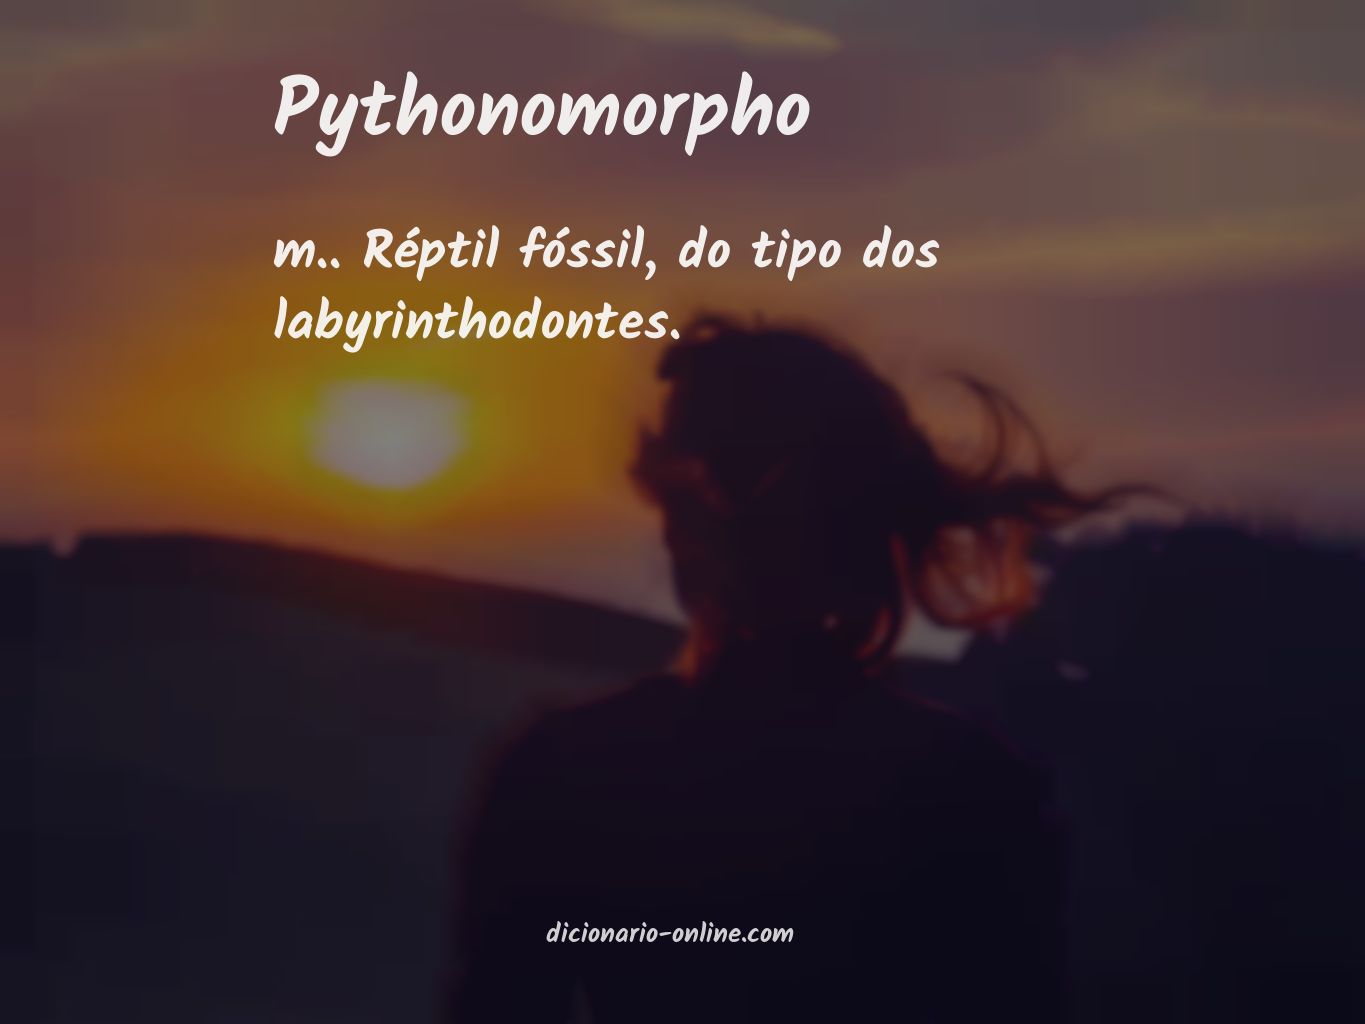 Significado de pythonomorpho